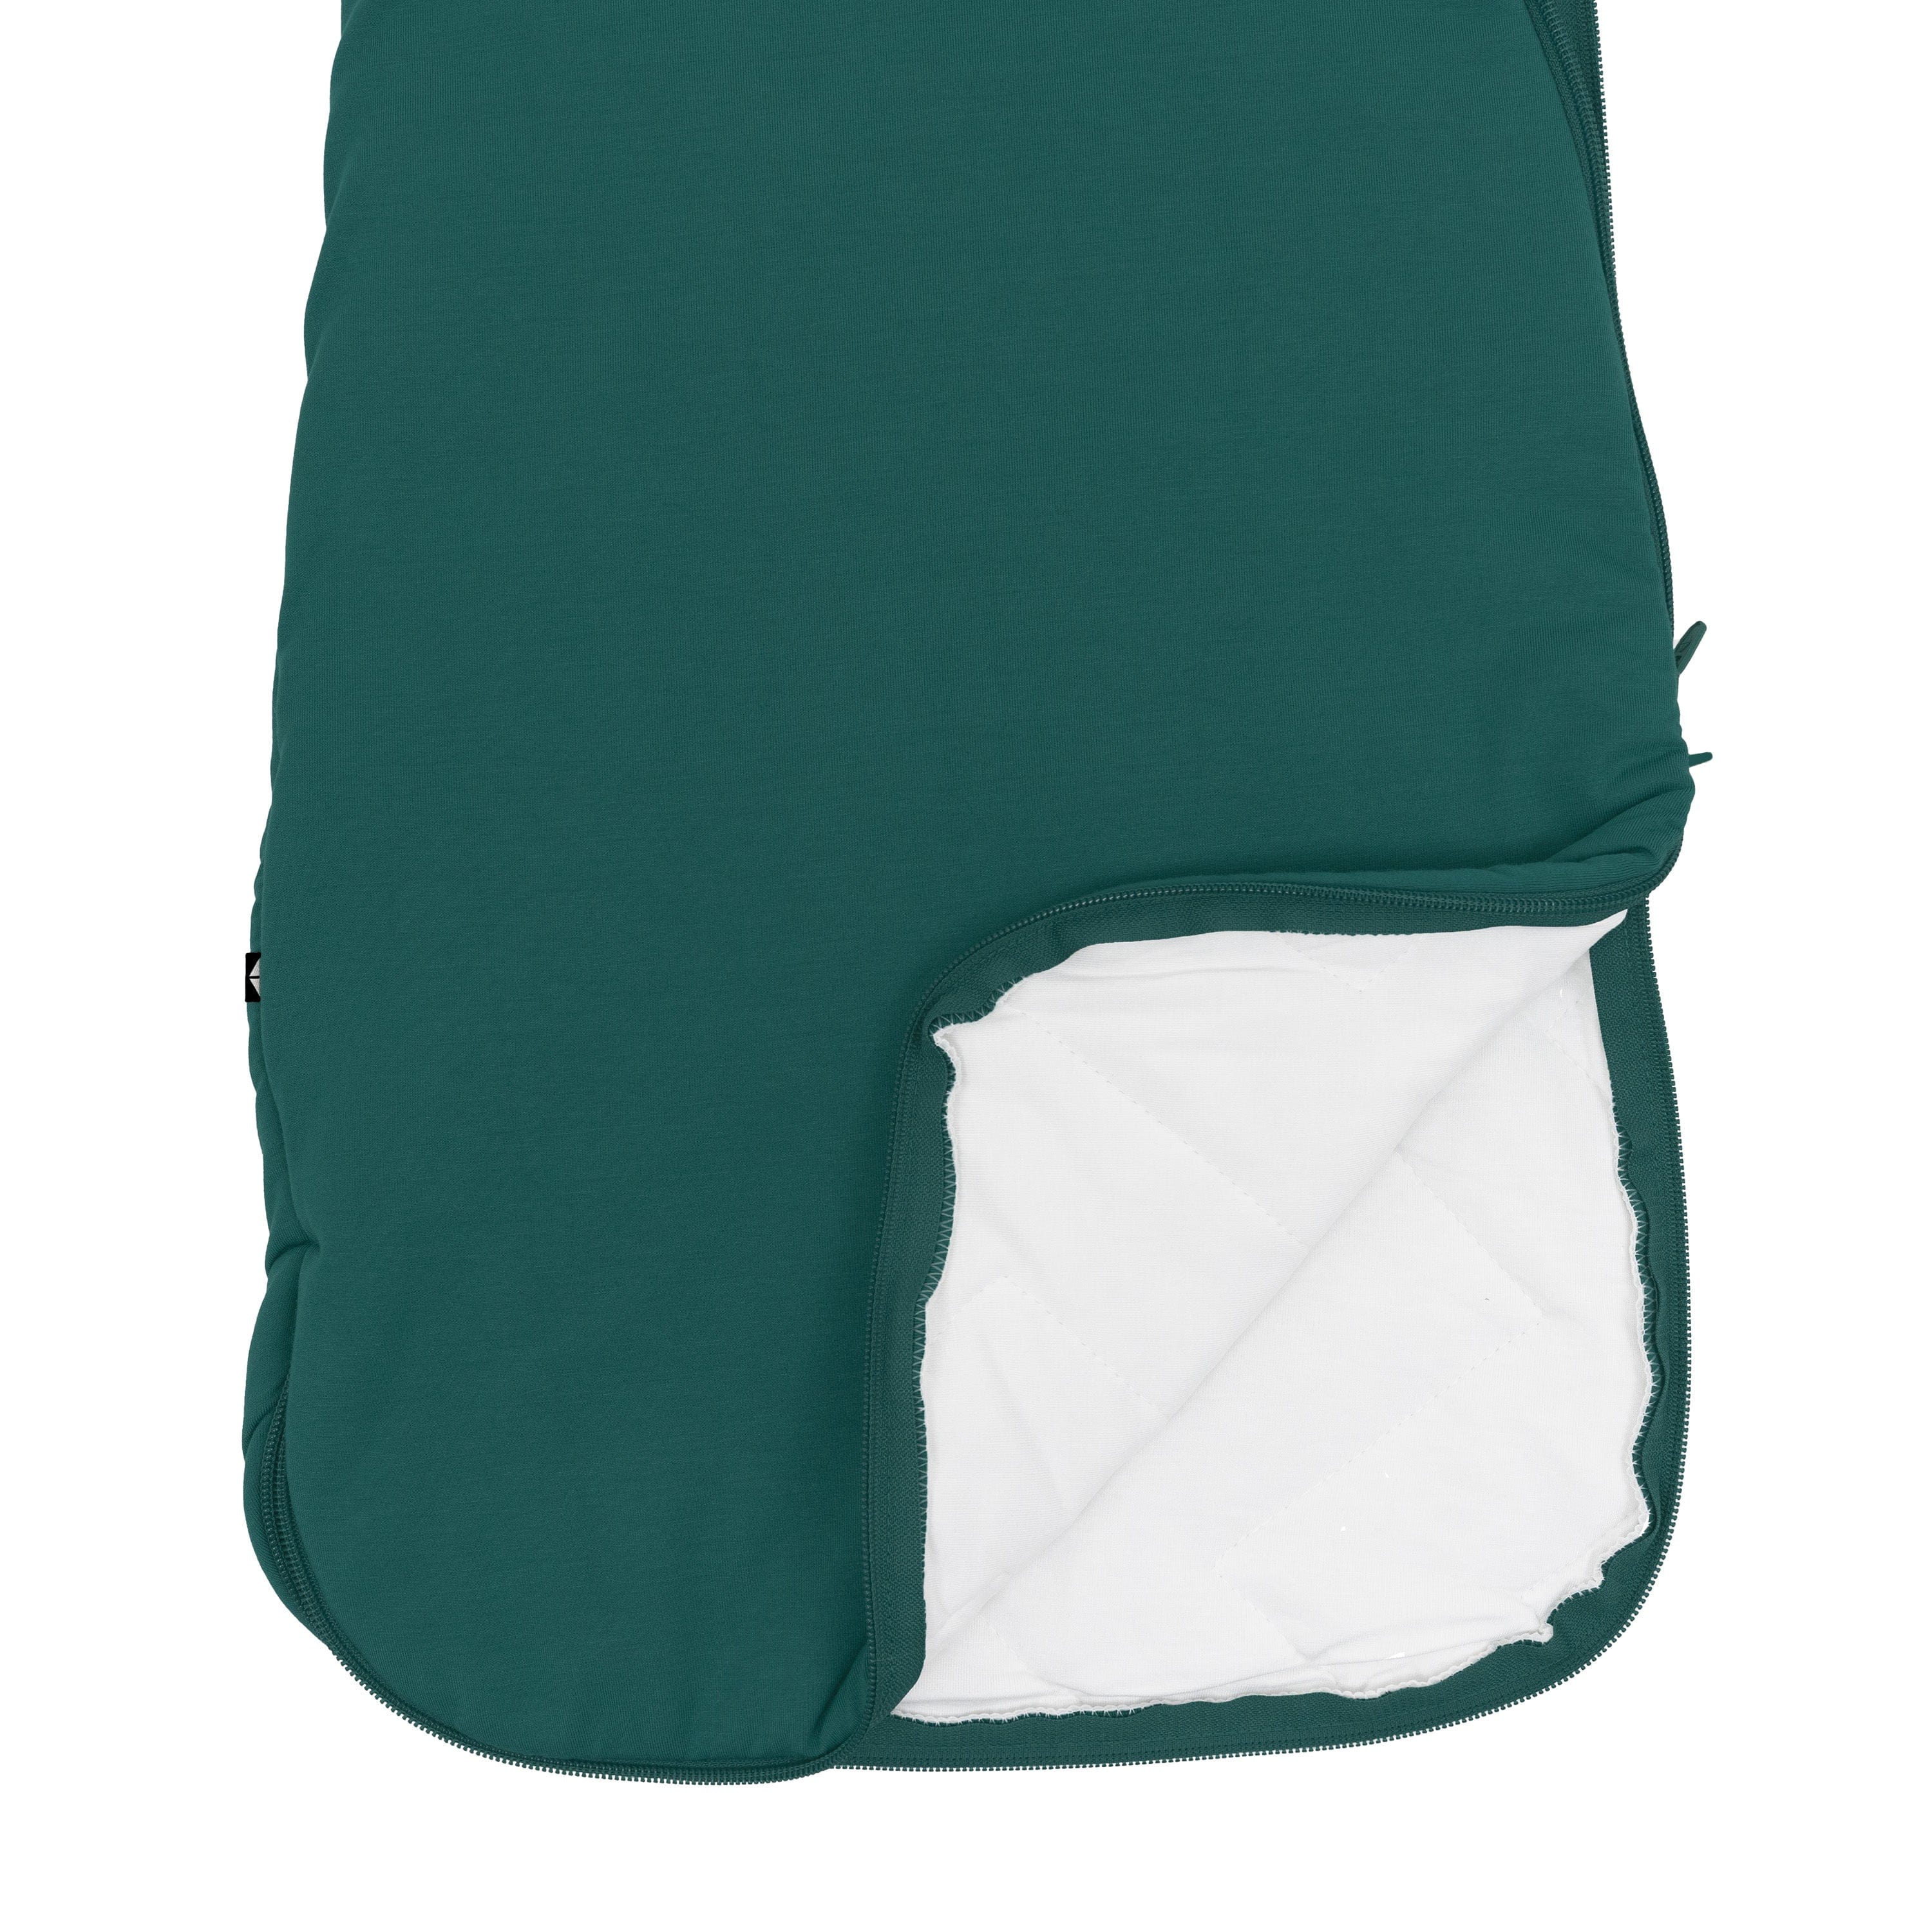 Kyte Baby bamboo Sleep Bag in Emerald 2.5 double zipper